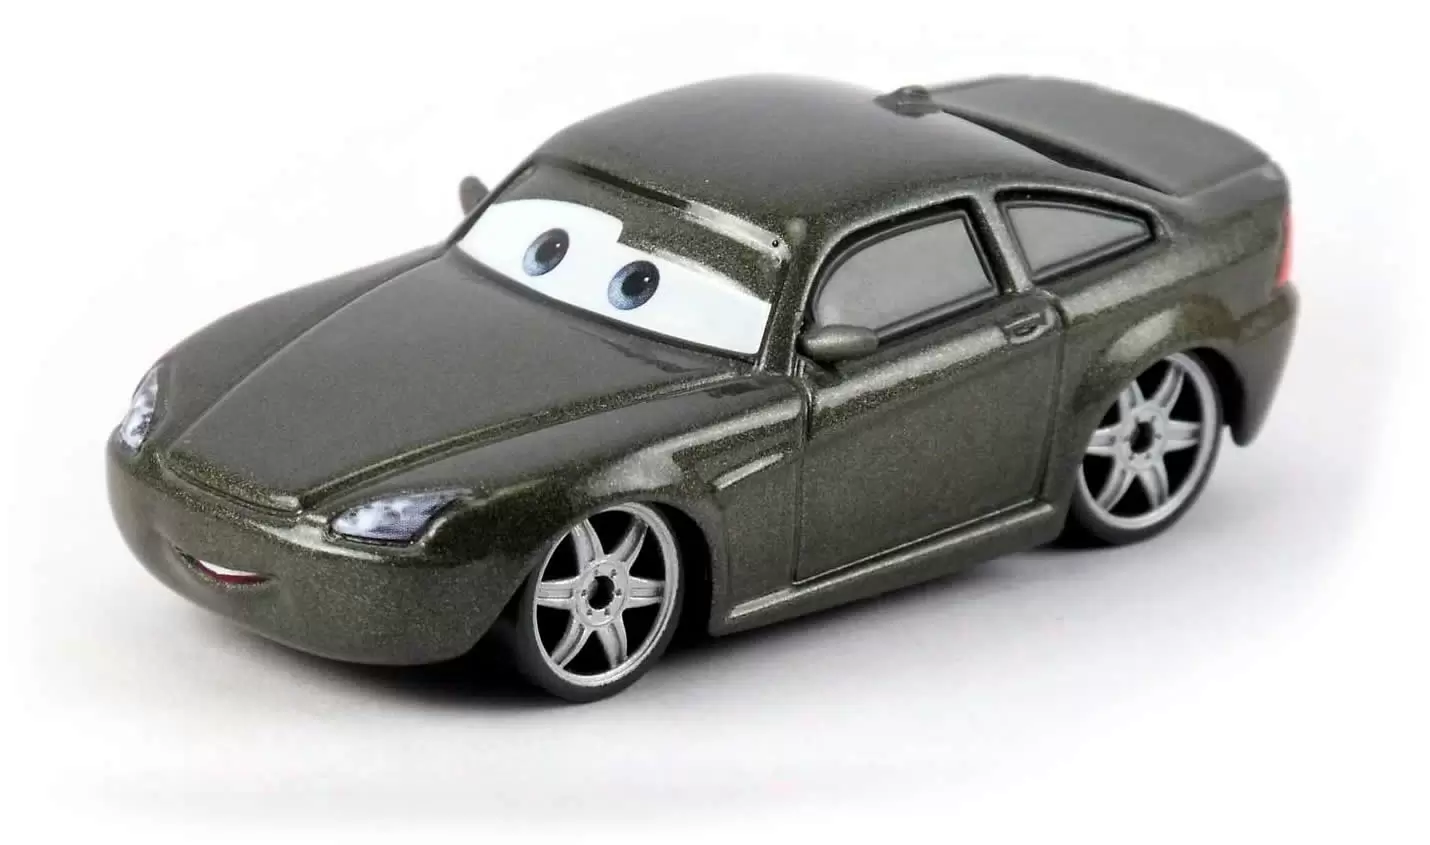 Cars 1 models - Bob Cutlass